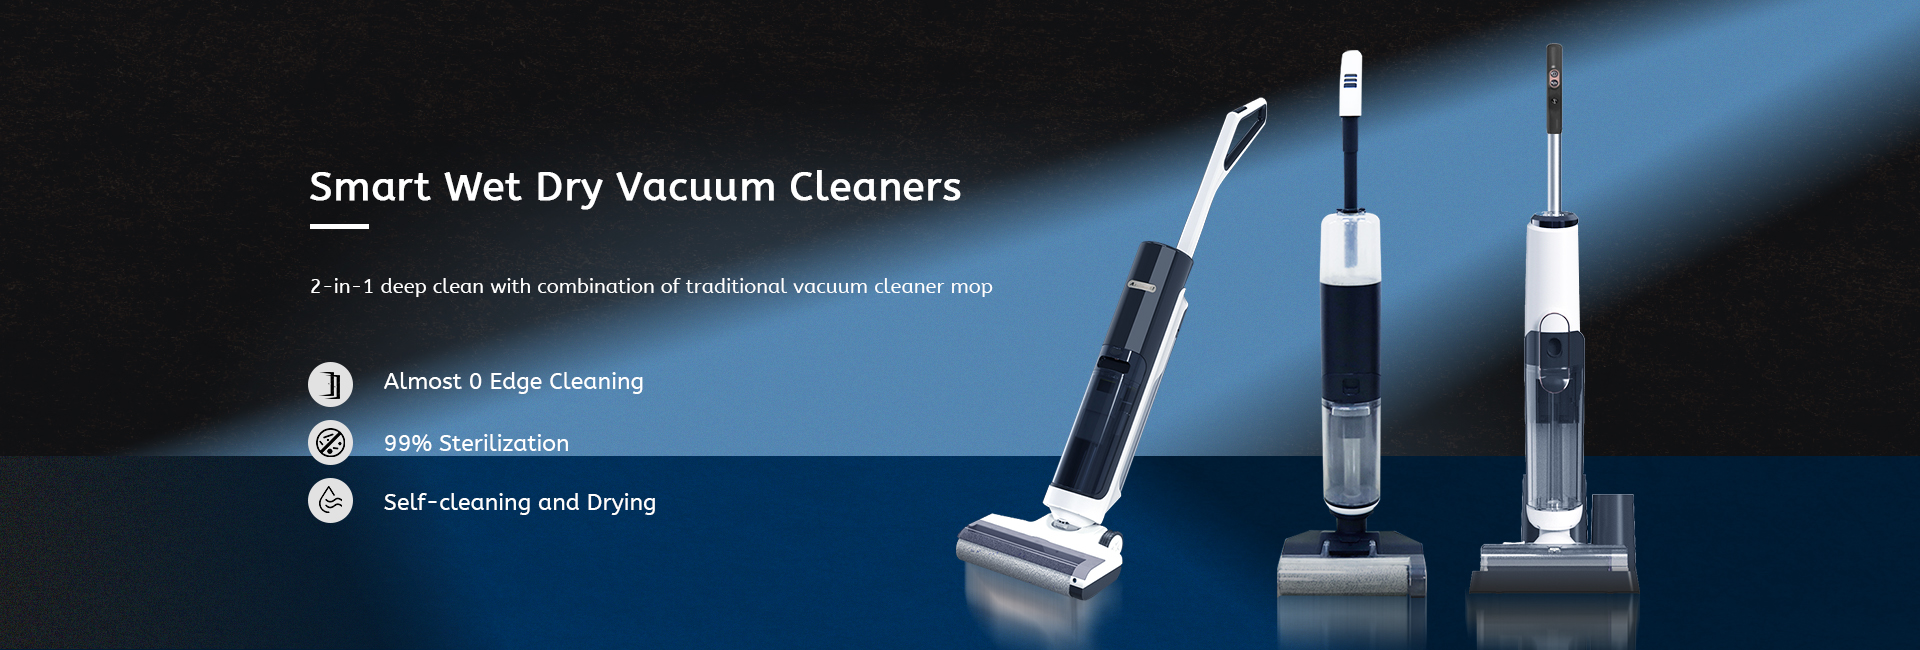 Vacuum Cleaner imxarrab u niexef